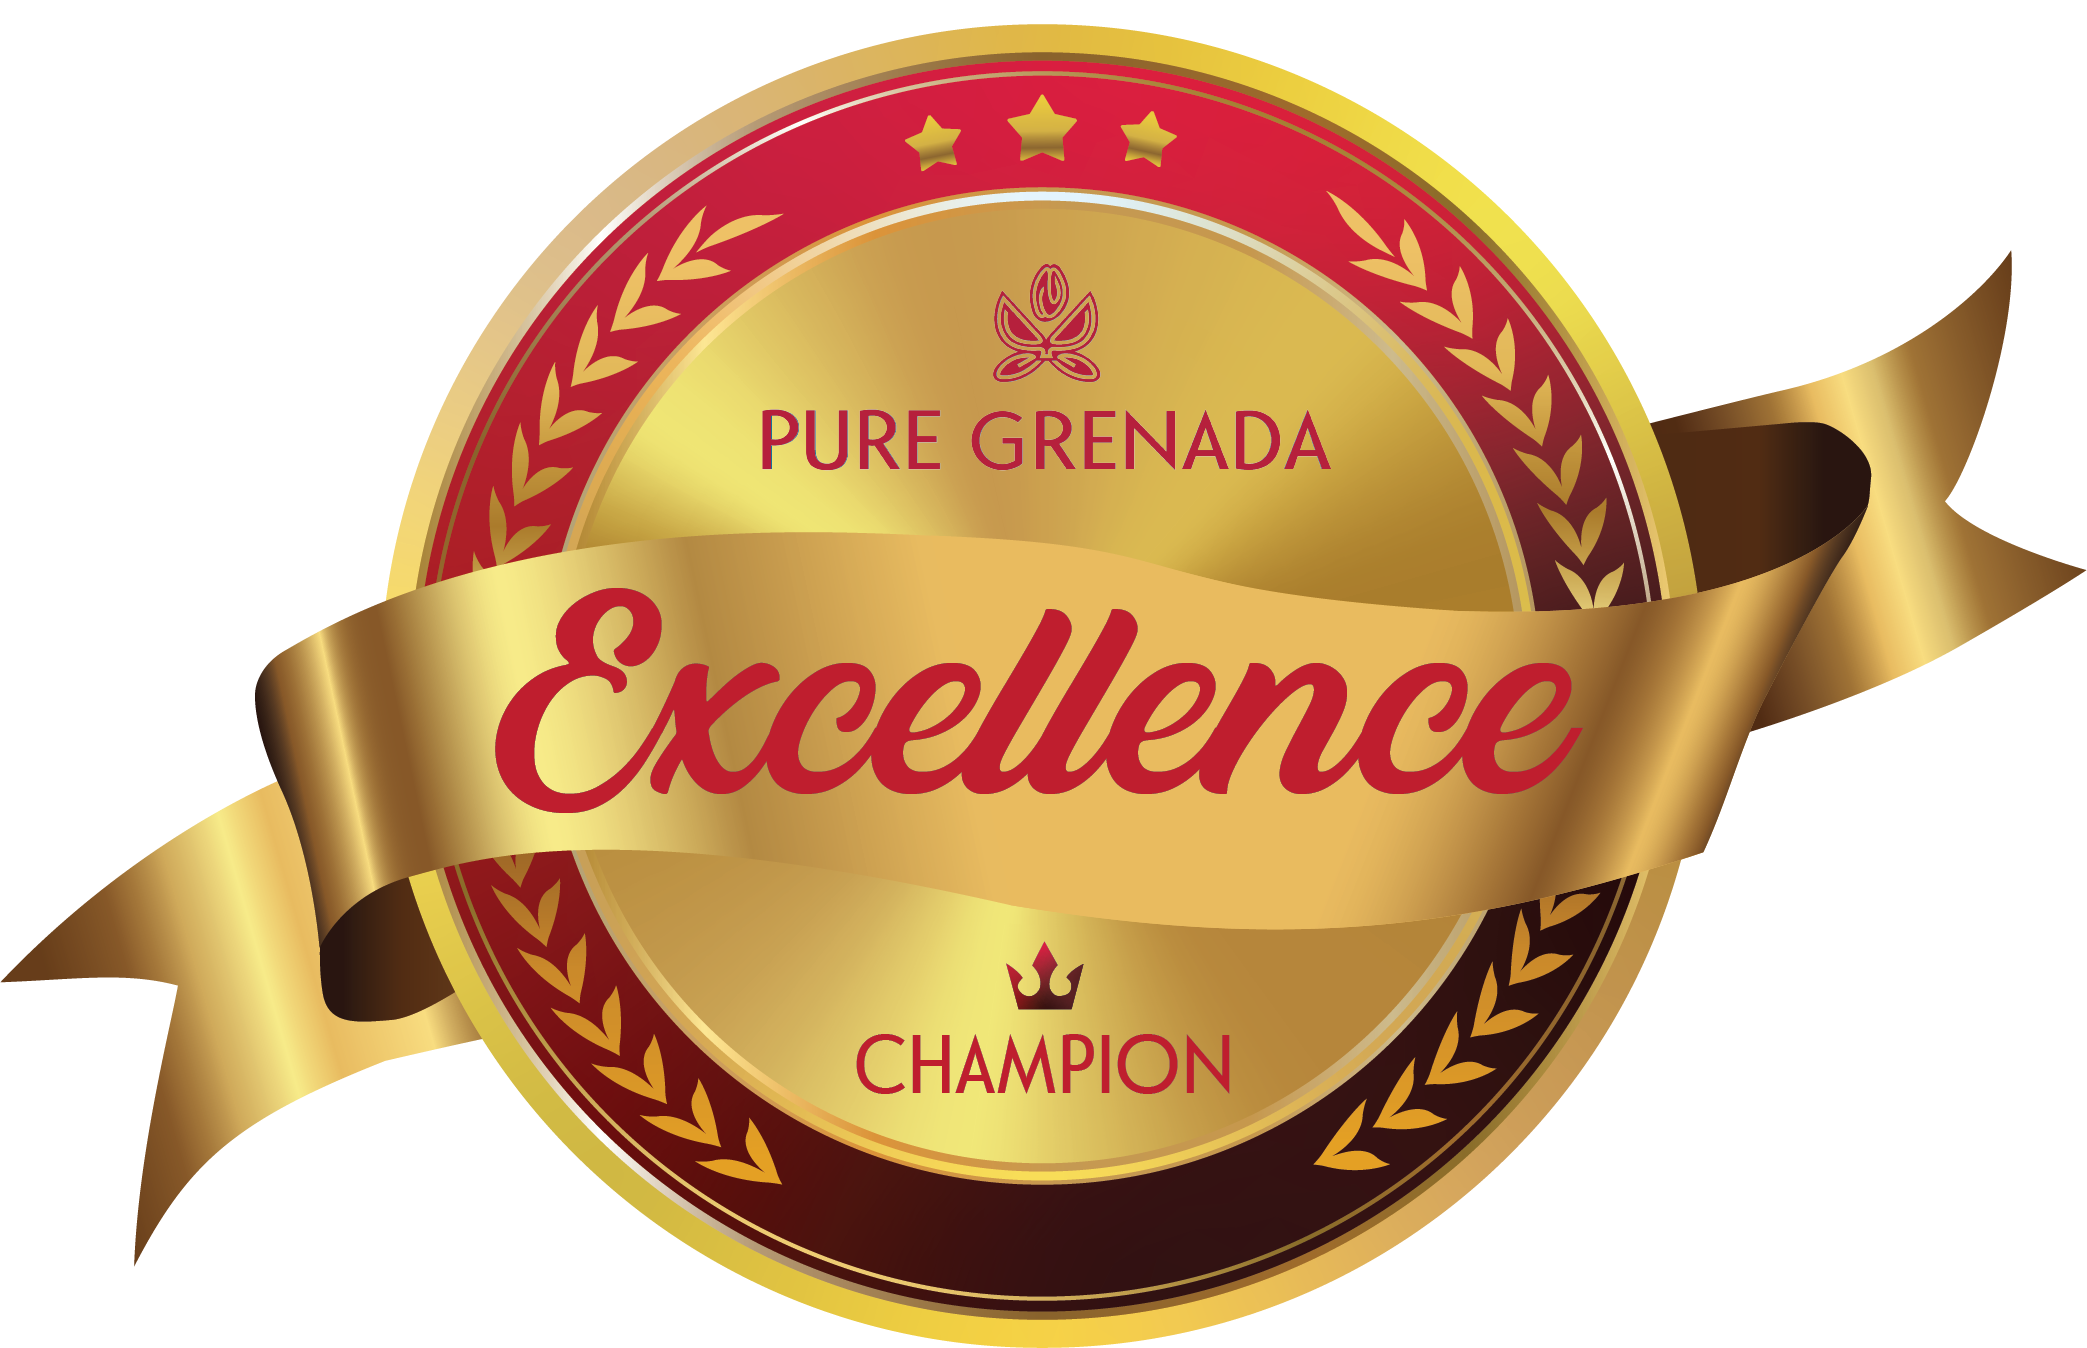 pure grenada excellence champion